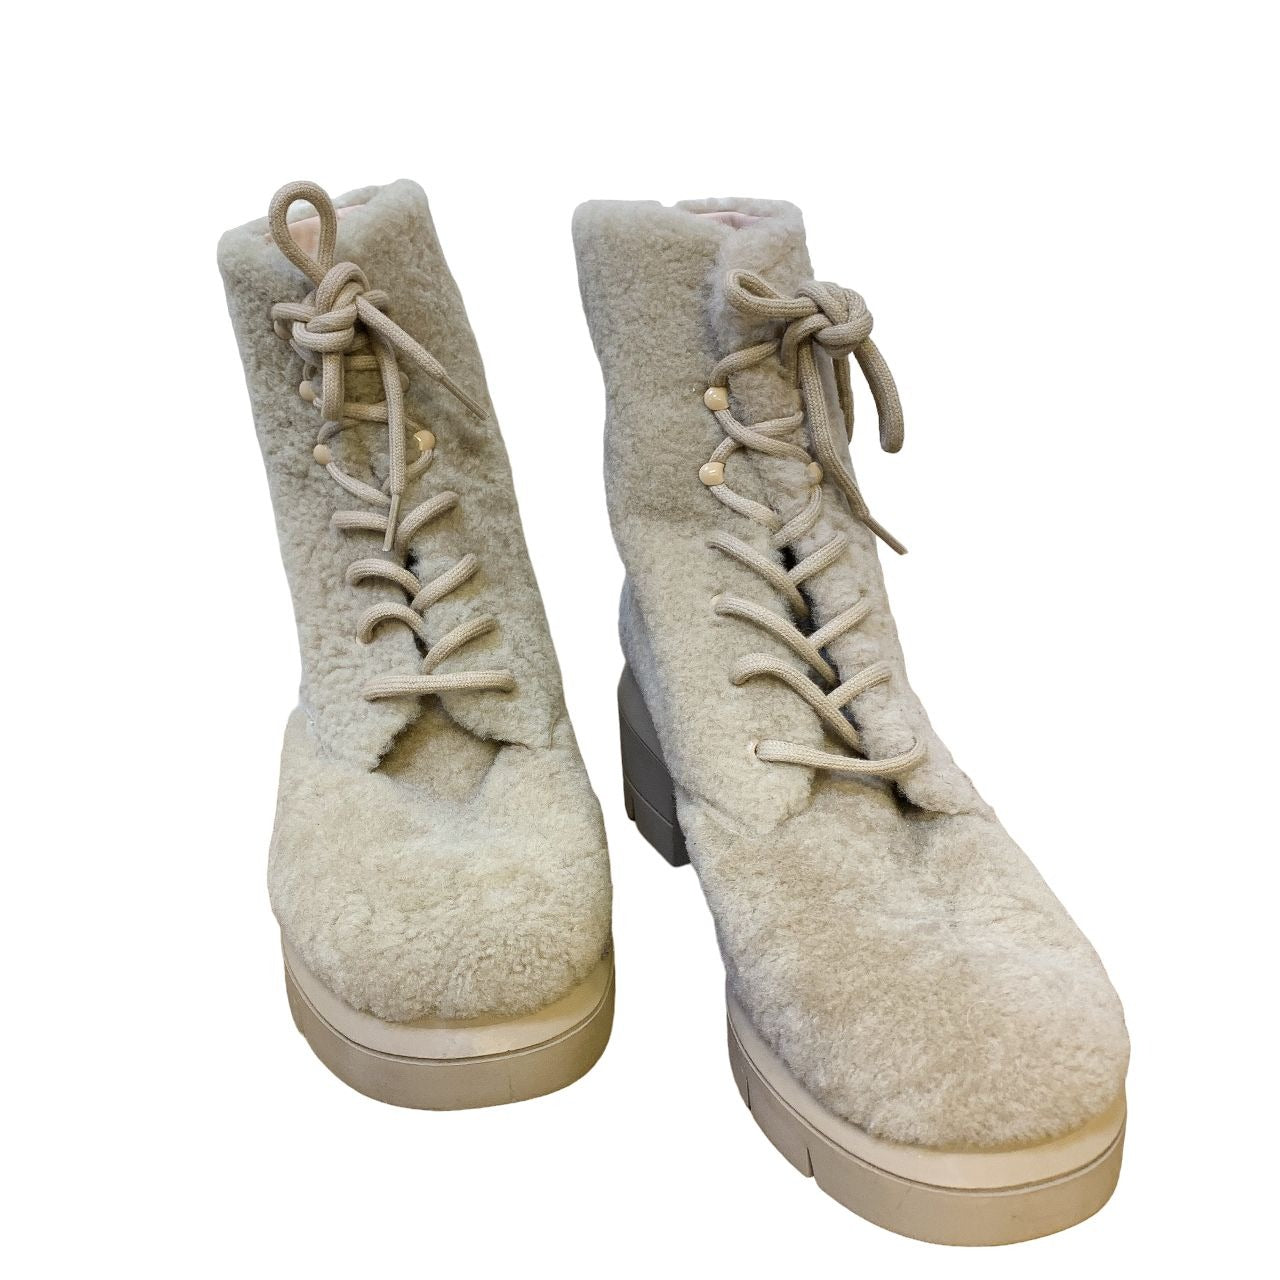 *Stuart Weitzman Tan Faux Fur Lace-up Ankle Boots Size 9.5